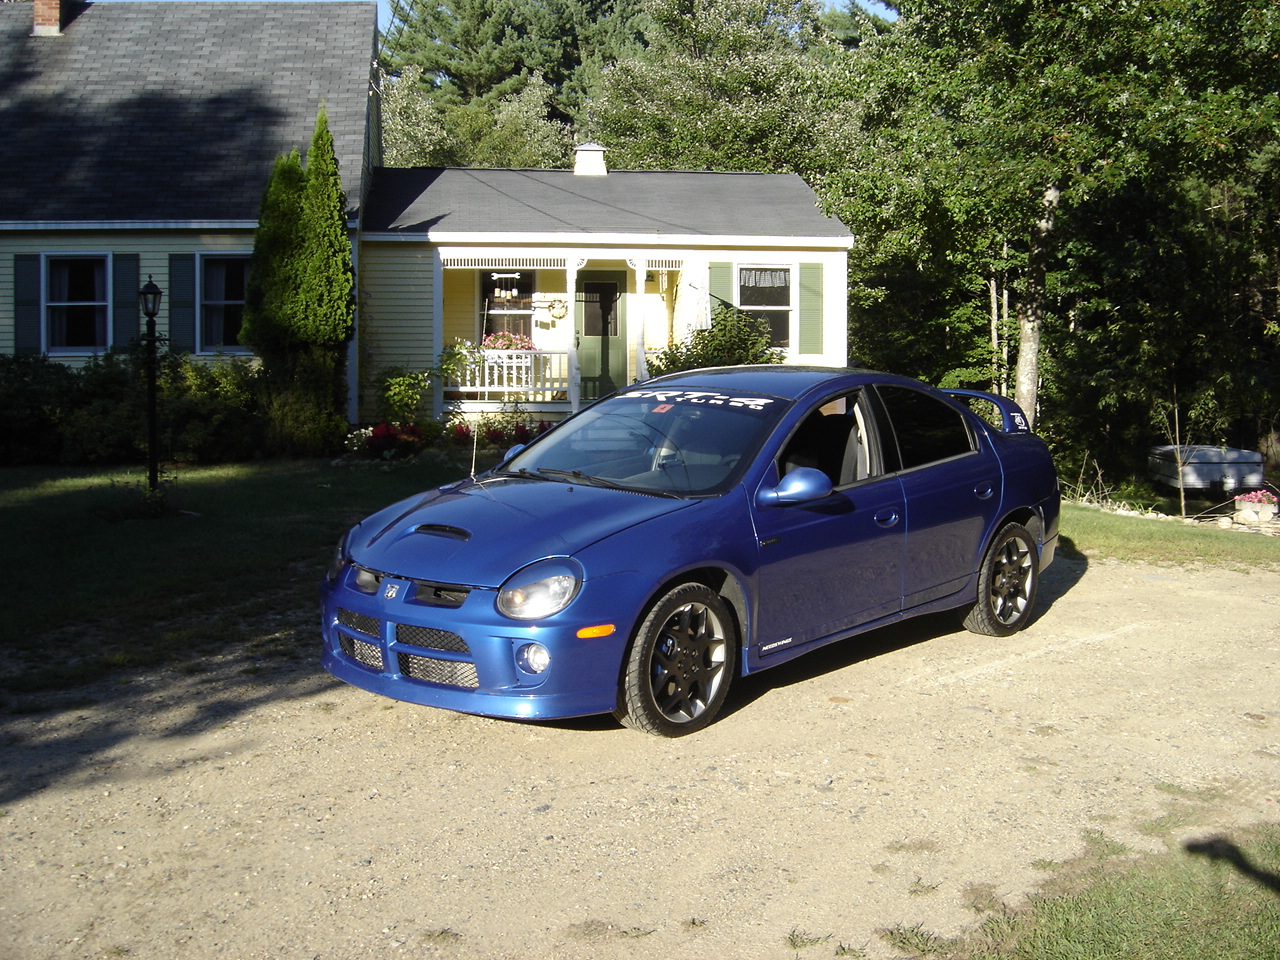  2004 Dodge Neon SRT-4 